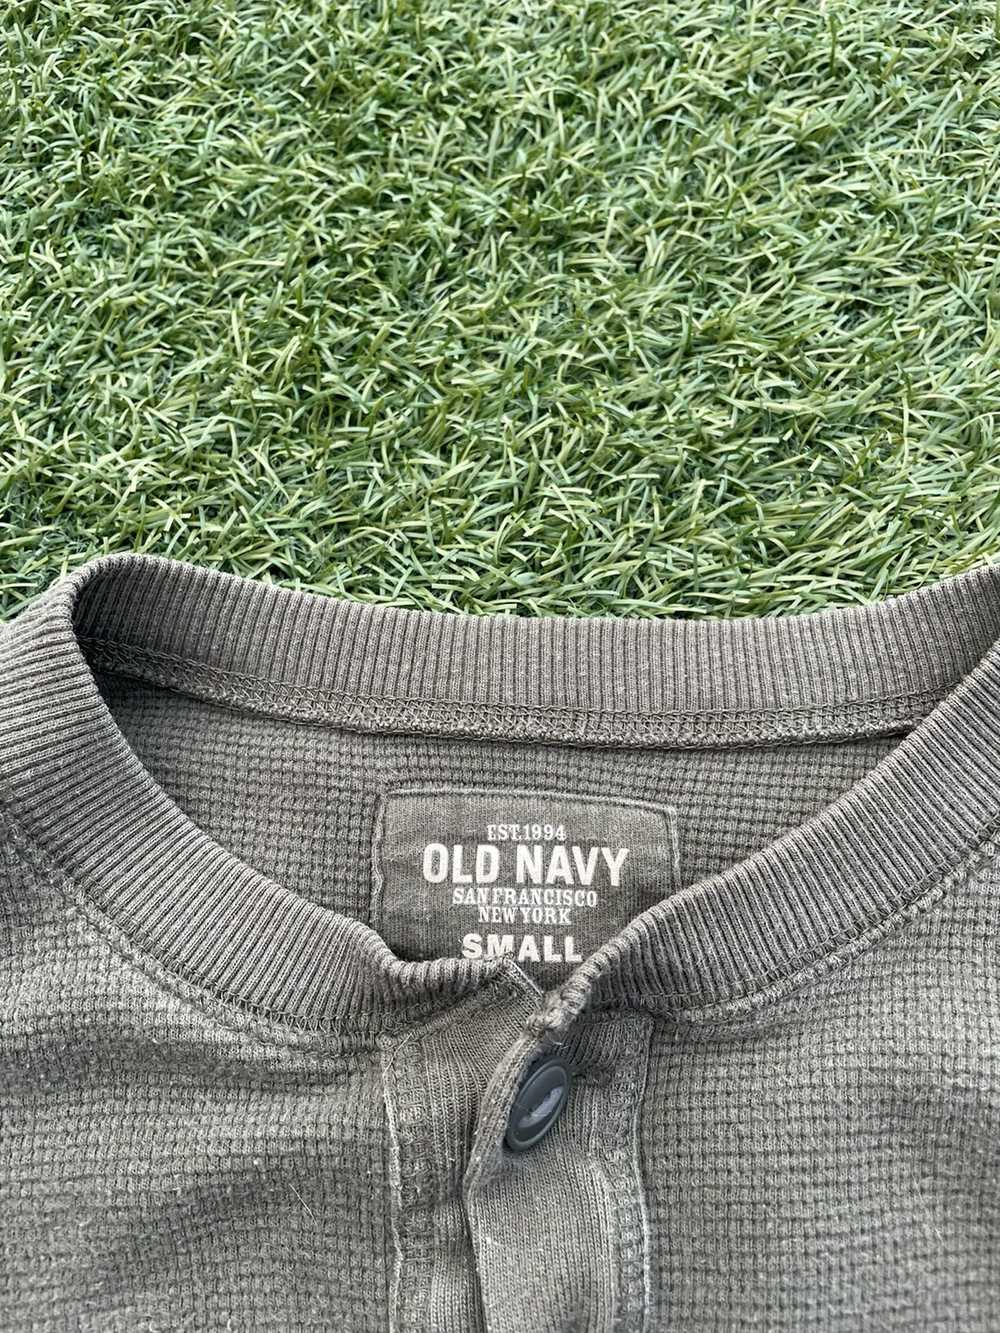 Old Navy Vintage old navy sweatshirt - image 3